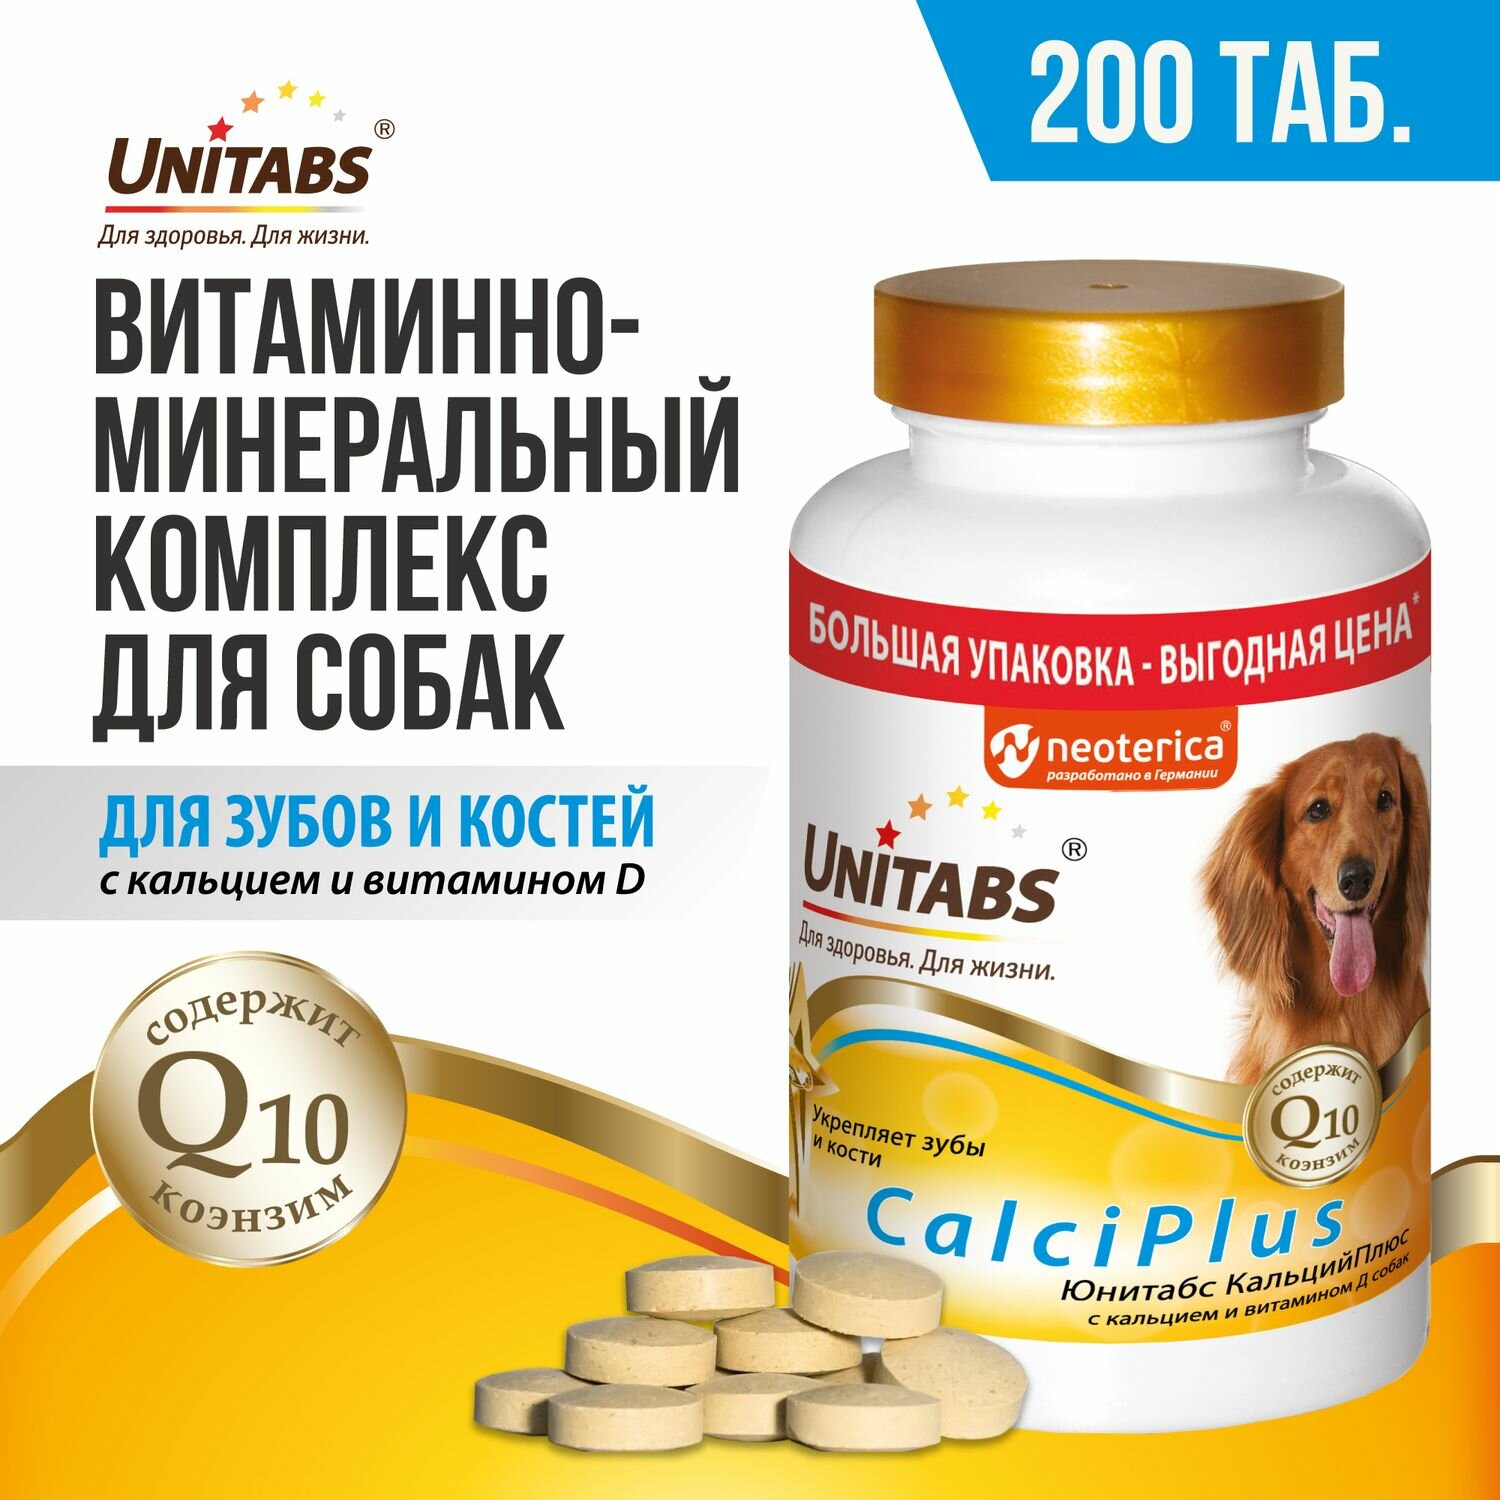 Кормовая добавка с витаминами для собак Unitabs КальцийПлюс с кальцием, витамином D и коэнзимом Q10, 200 таб.